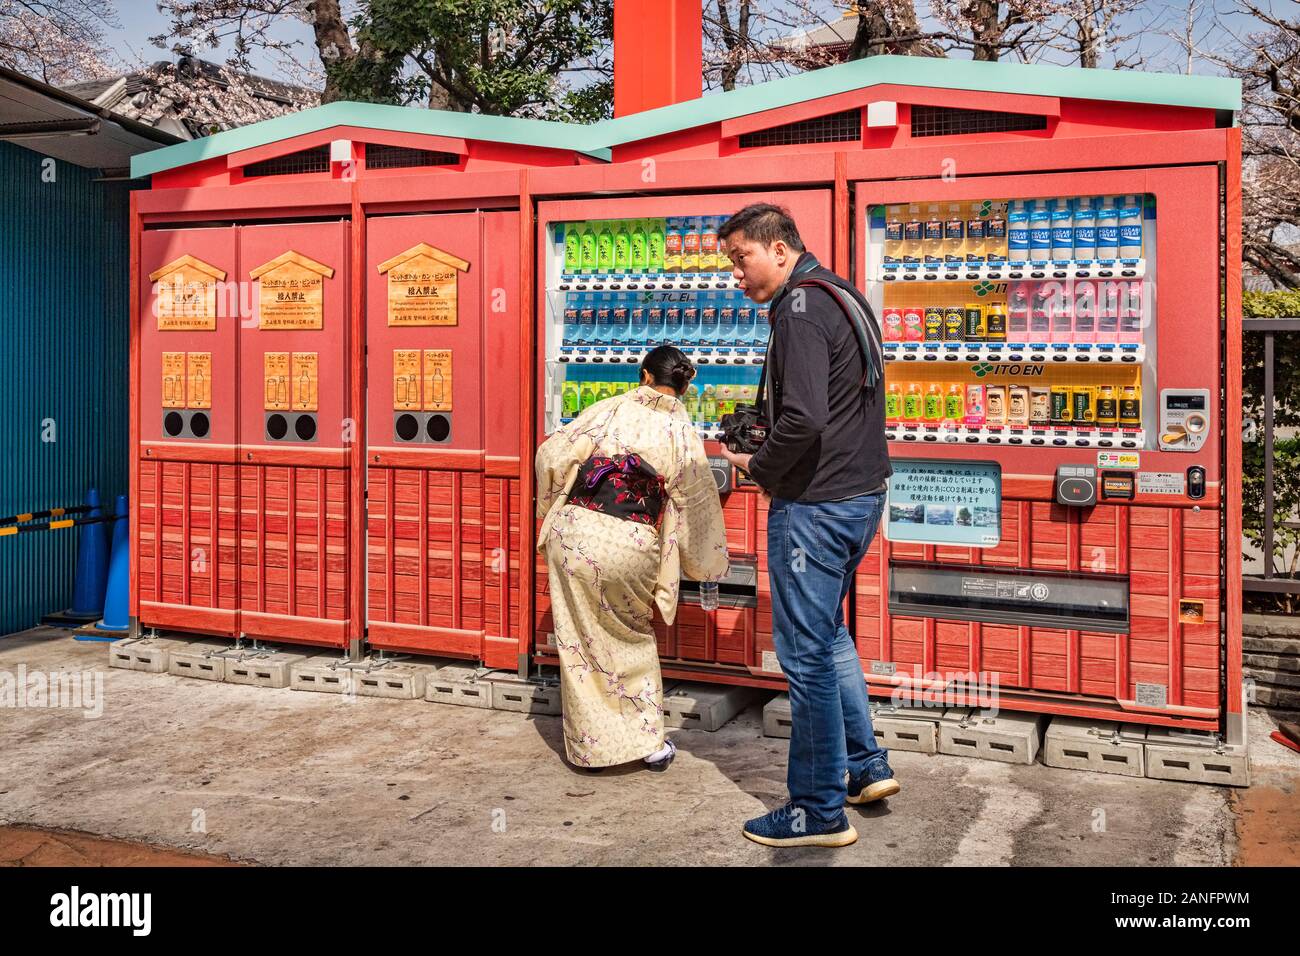 25 de marzo de 2019: Tokio, Japón - Bebidas frías y calientes y máquinas expendedoras de contenedores de reciclaje en Senso-ji templo budista en Asakusa, Tokio, Japón. Foto de stock